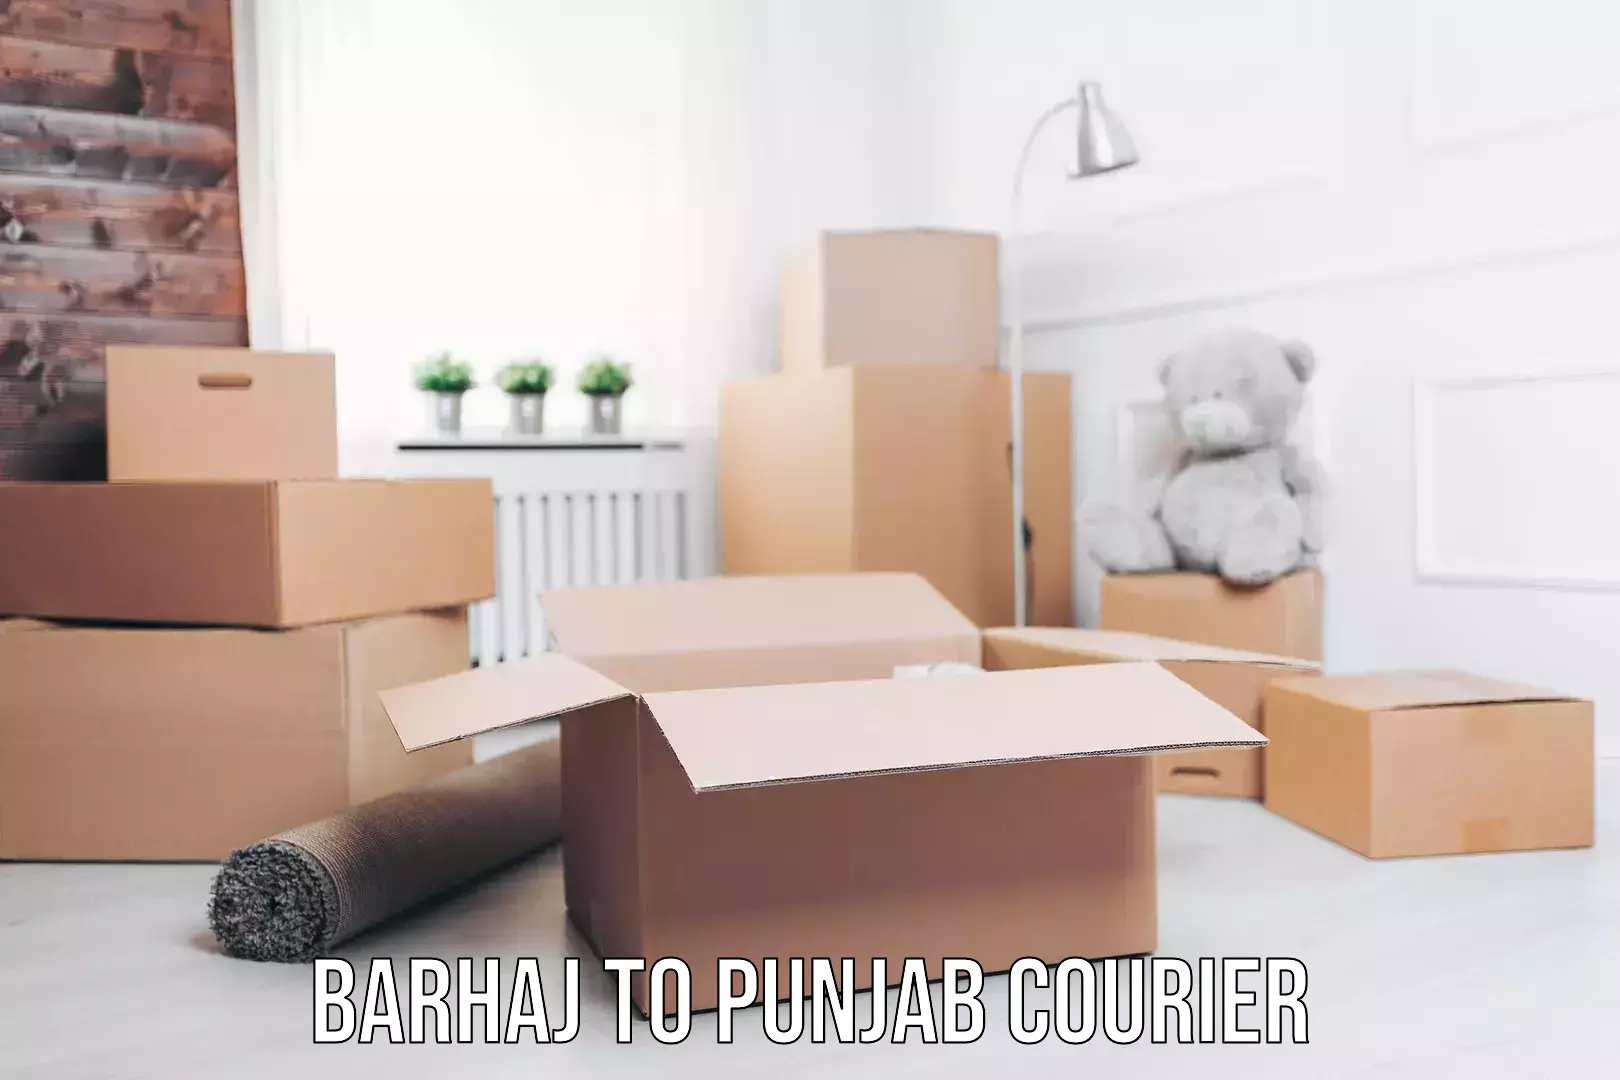 Next day courier Barhaj to Punjab